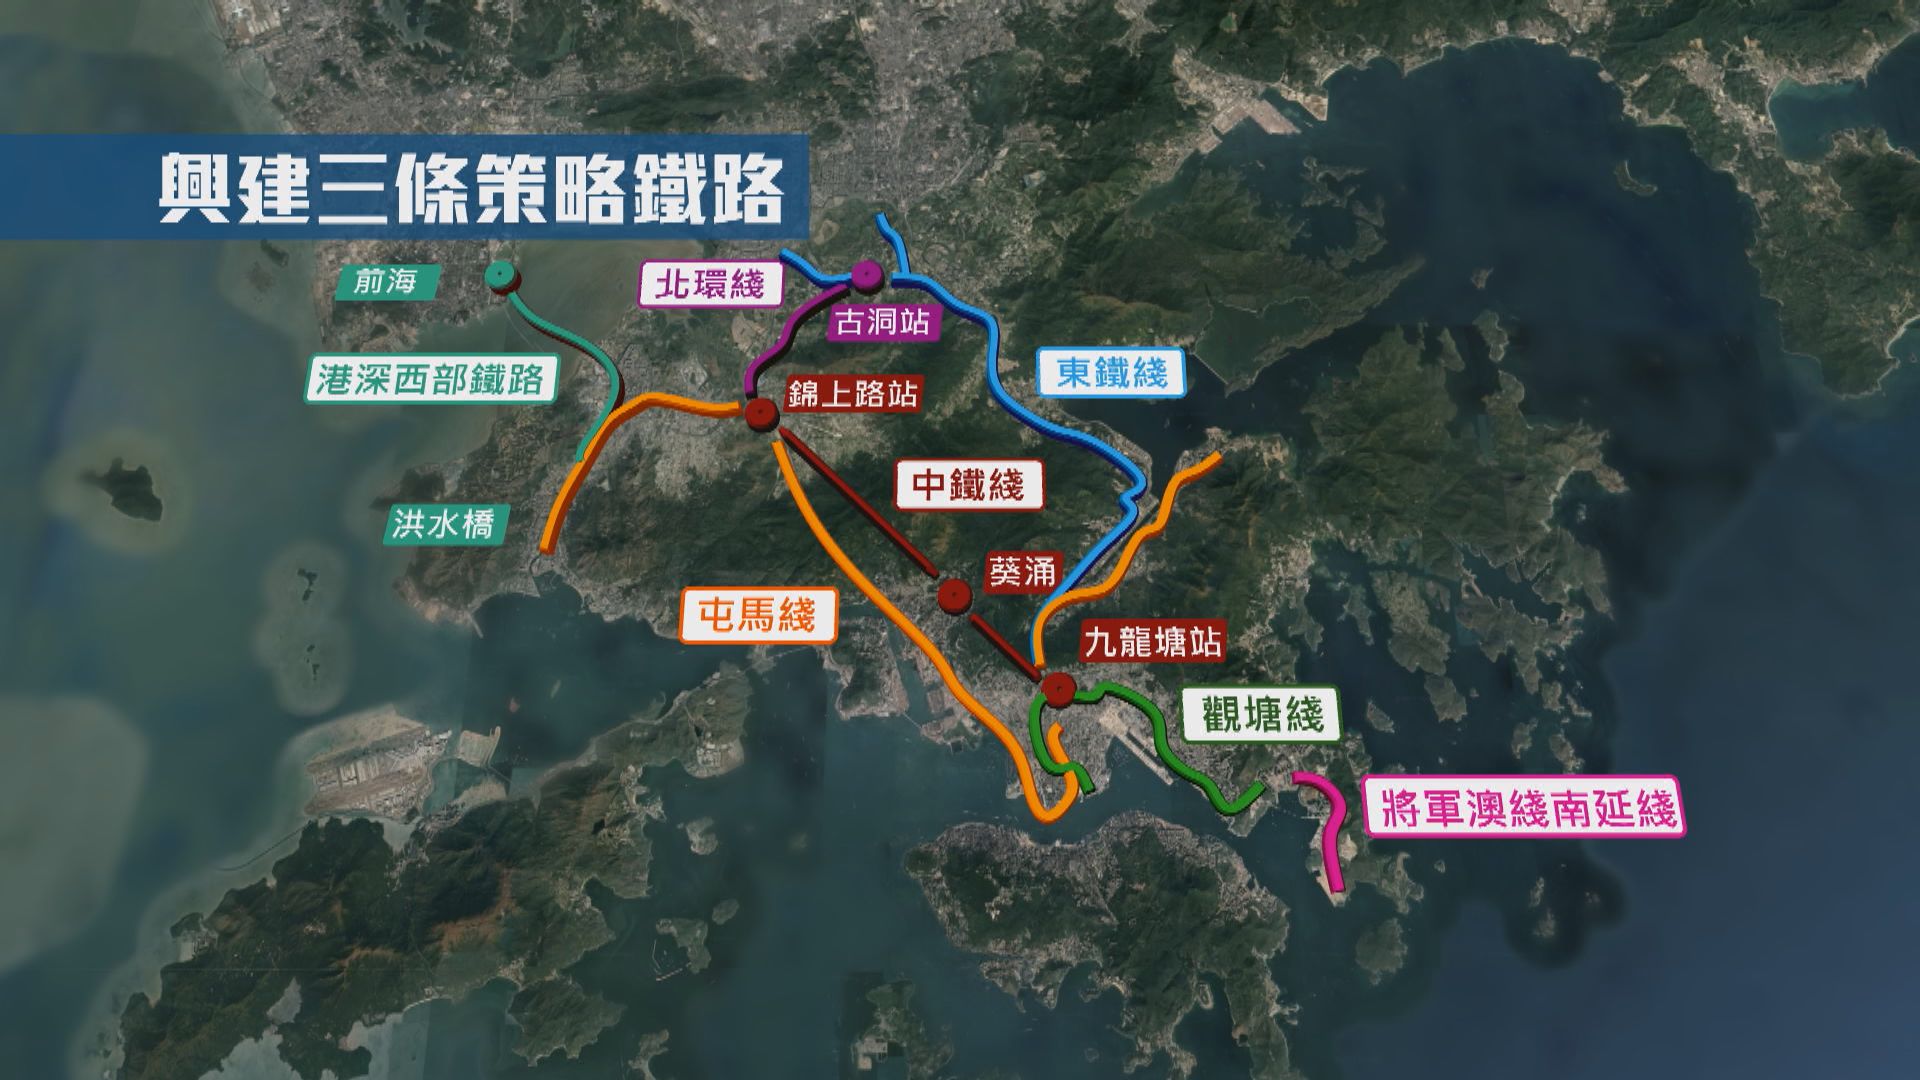 施政報告提出興建三條主要幹道及三條鐵路